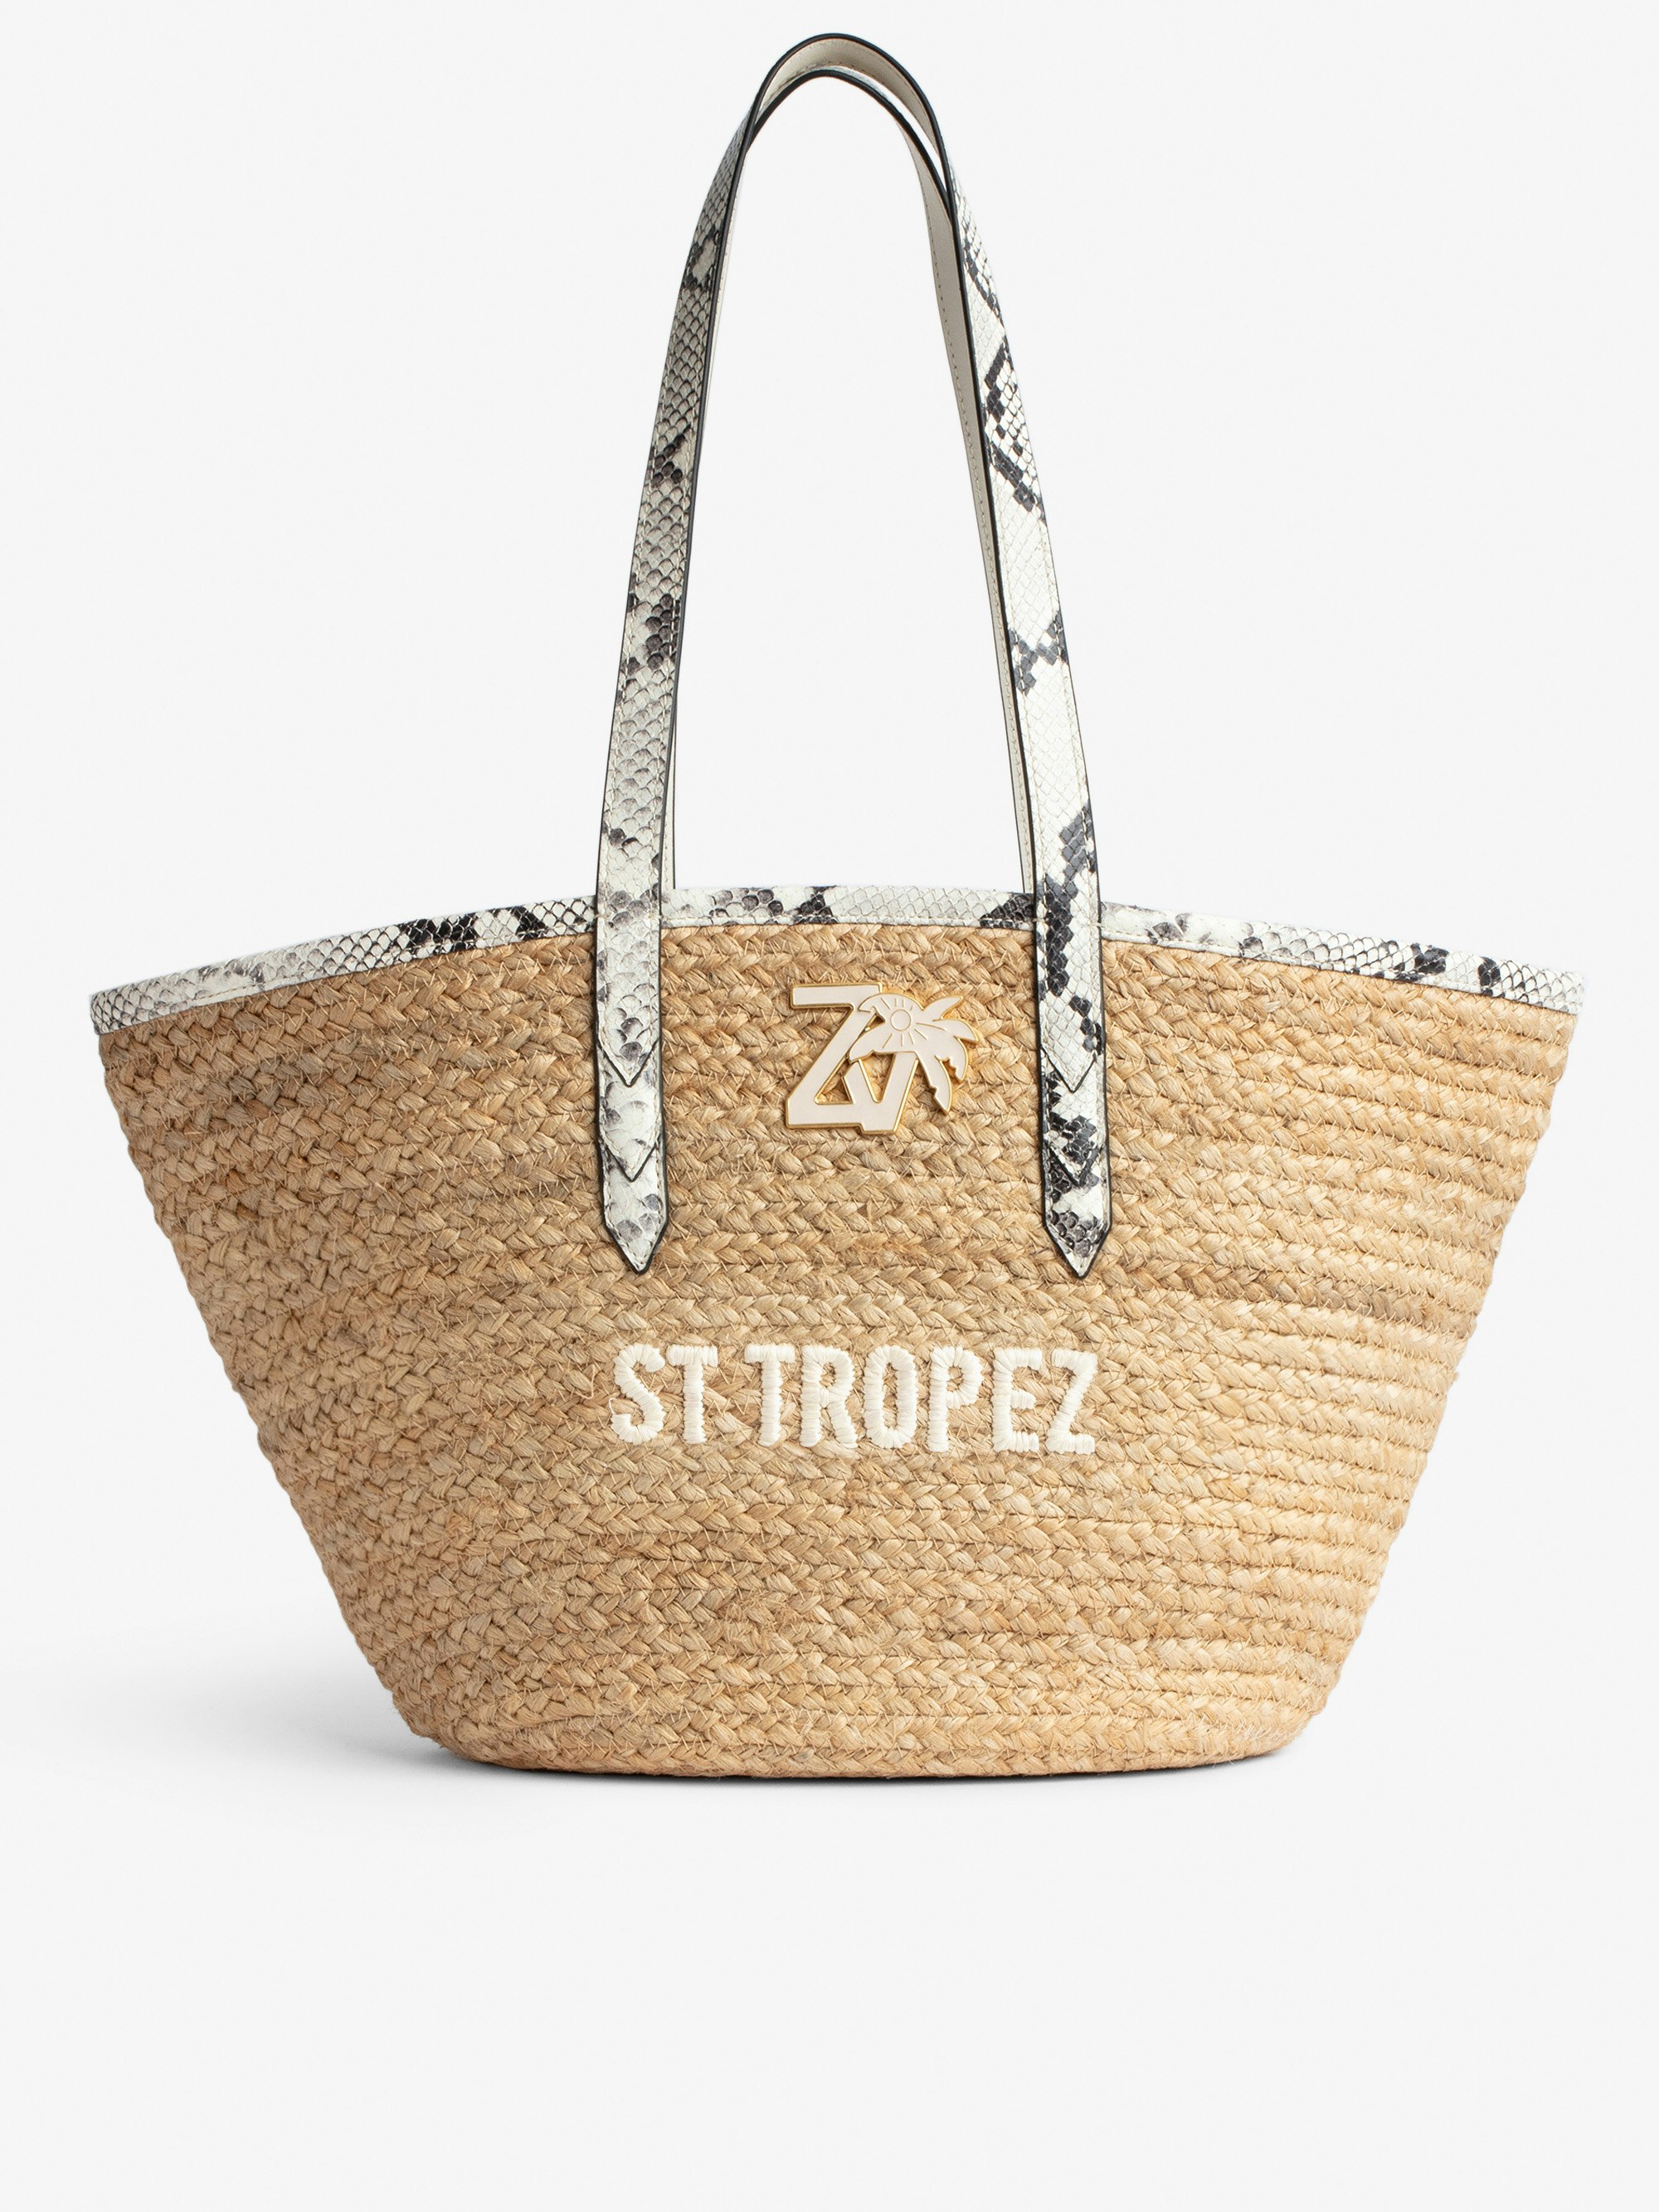 Tasche Le Beach Bag - Damen-Strohtasche mit Henkeln aus ecrufarbenem Leder in Python-Optik, „St Tropez“-Stickerei und ZV-Charm